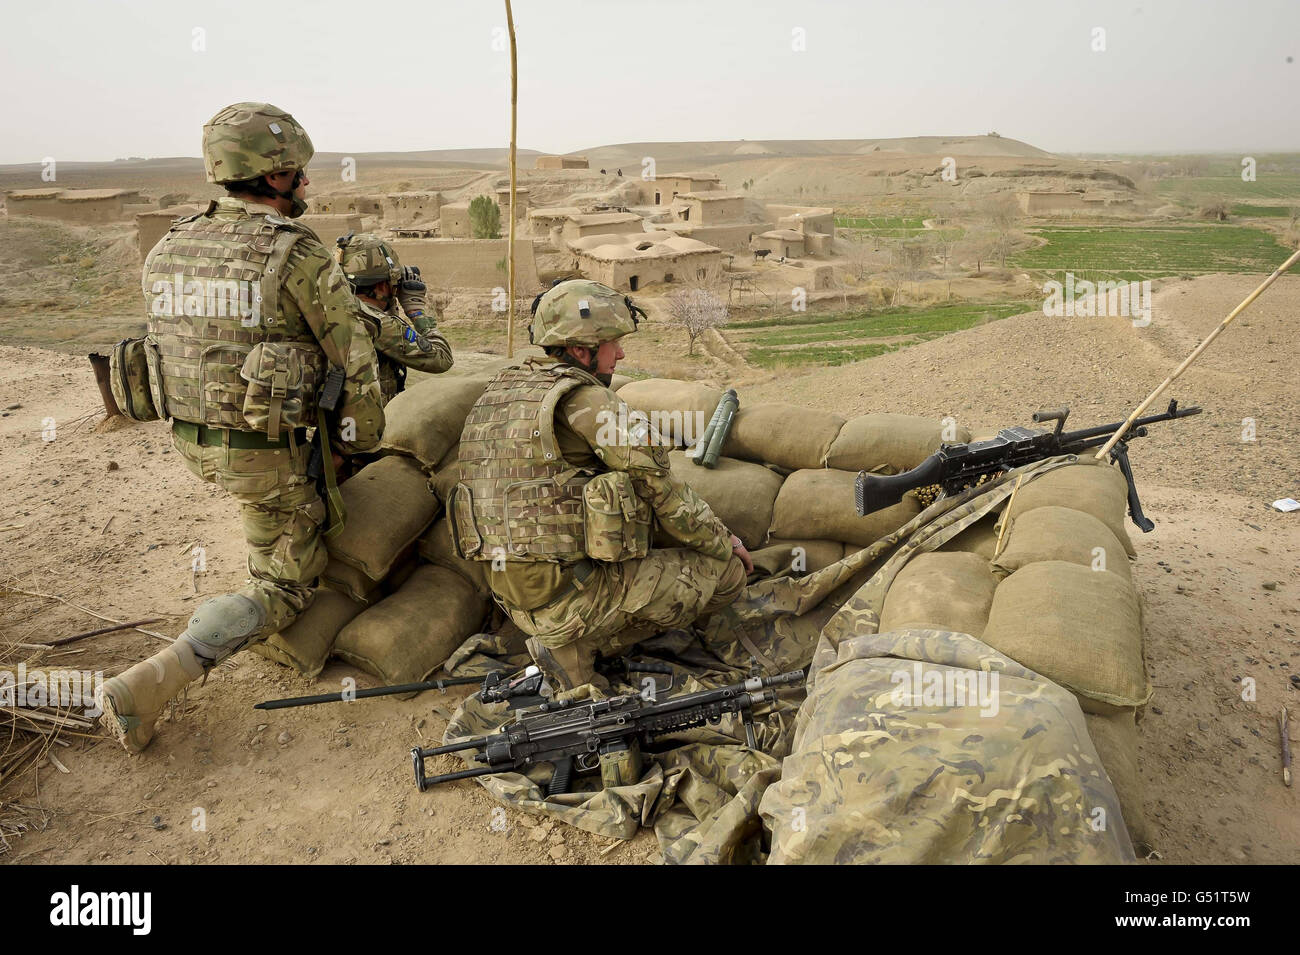 Britische Soldaten der ISAF Combined Force haben am ersten Tag der Operation „Now Roz“ (New Day in Dari) einen Beobachtungspunkt (OP) eingerichtet, der über das Yakchal-Tal blickt. Die Afghan National Security Force (ANSF) befreit die Taliban aus den von britischen Streitkräften unterstützten und betreuten Gebieten Gereshk und Lashkar gar in der Provinz Helmand, was als die letzte kombinierte Operation gilt, um die traditionell eine Taliban-Hochburg vom Aufstand zu befreien. Stockfoto